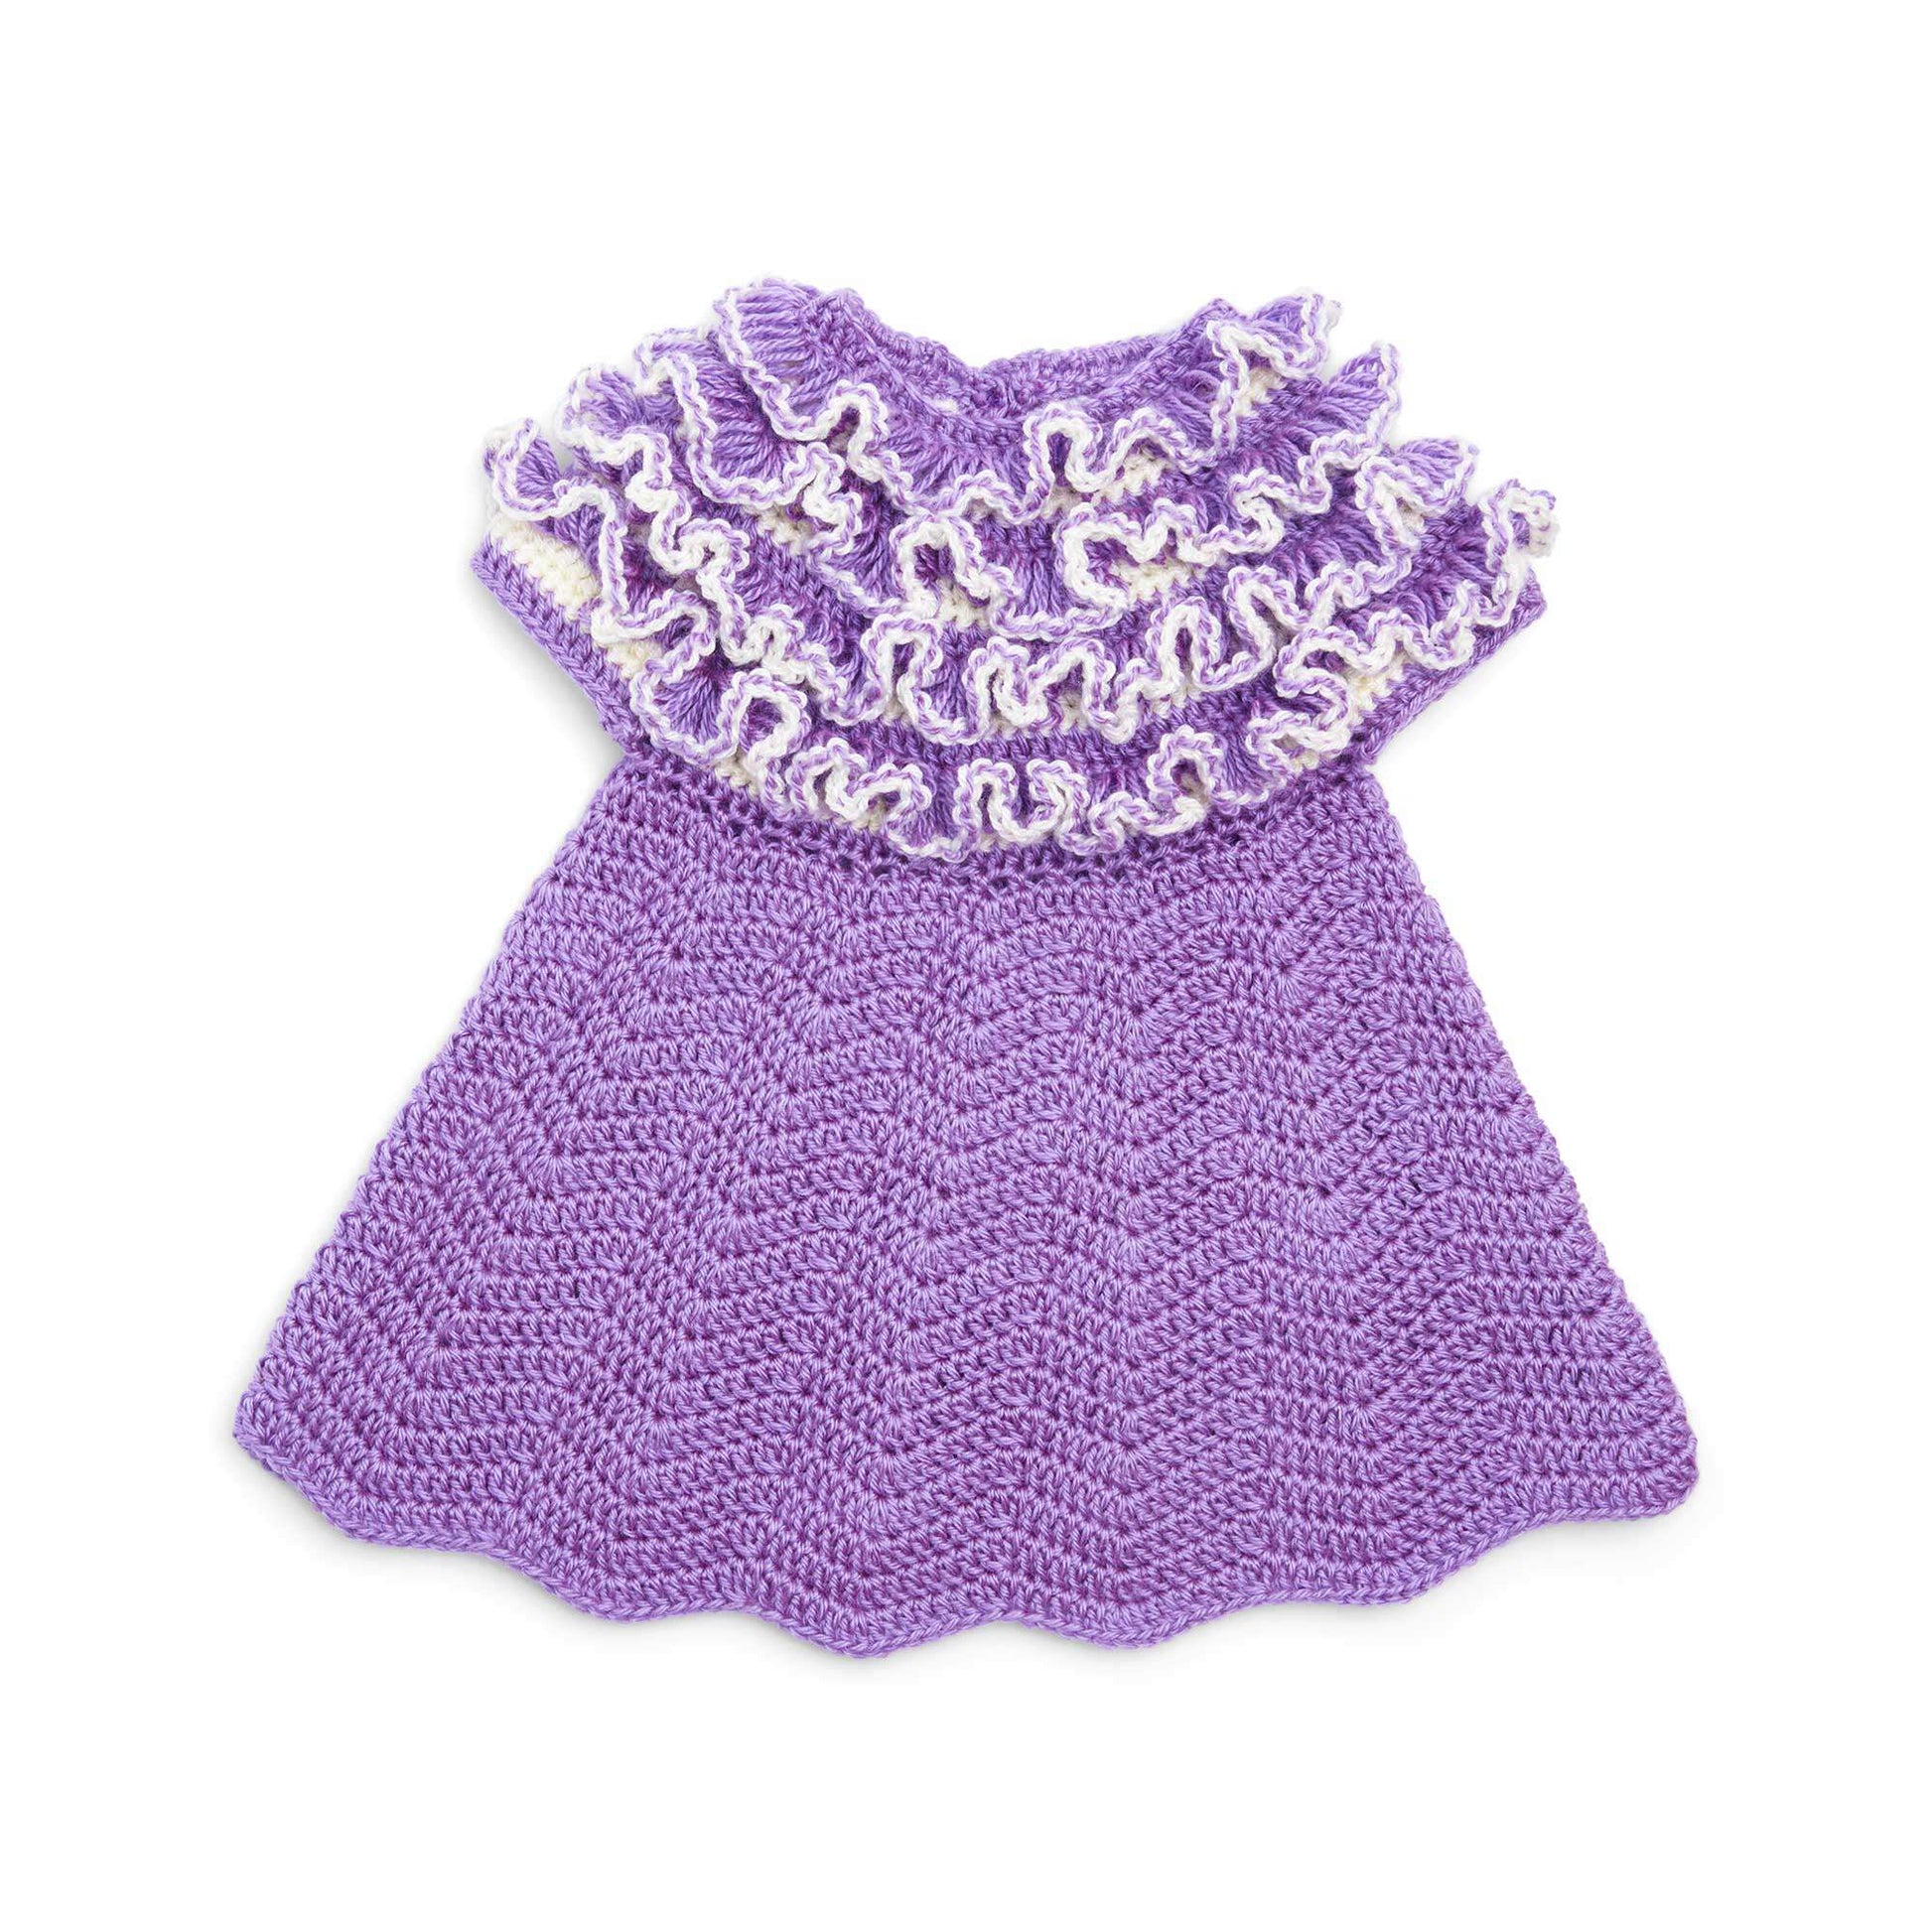 Free Bernat Crochet Ruffle Yoke Baby Dress Pattern